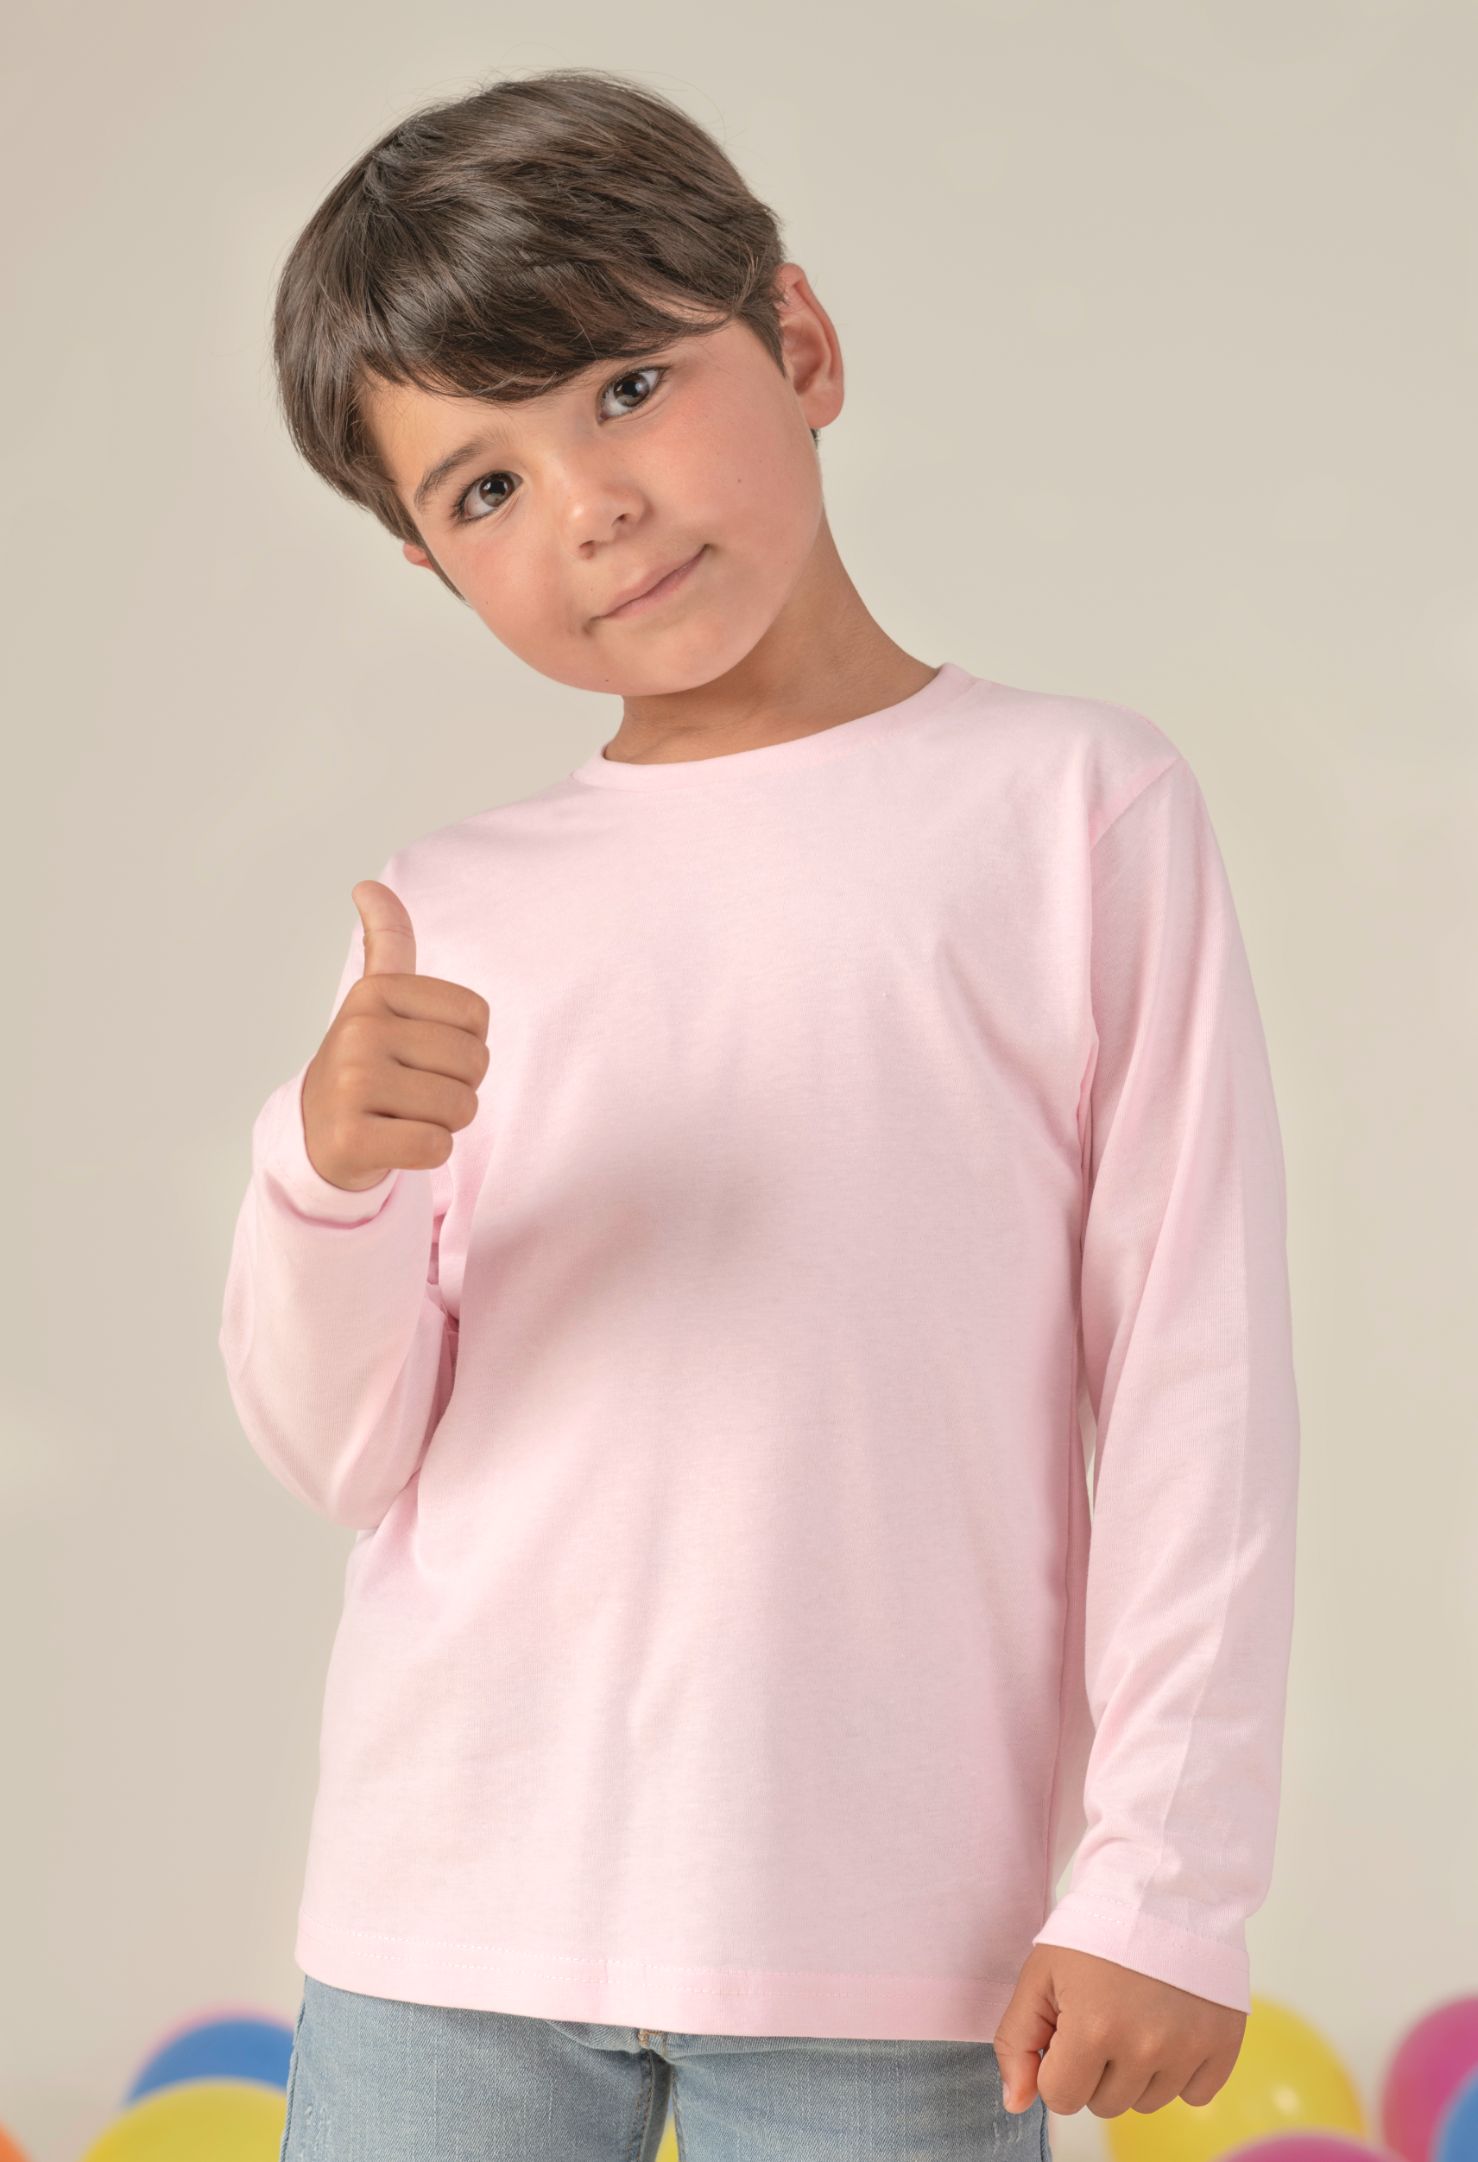 Dìtské trièko dlouhý rukáv JHK - Výprodej - zvìtšit obrázek